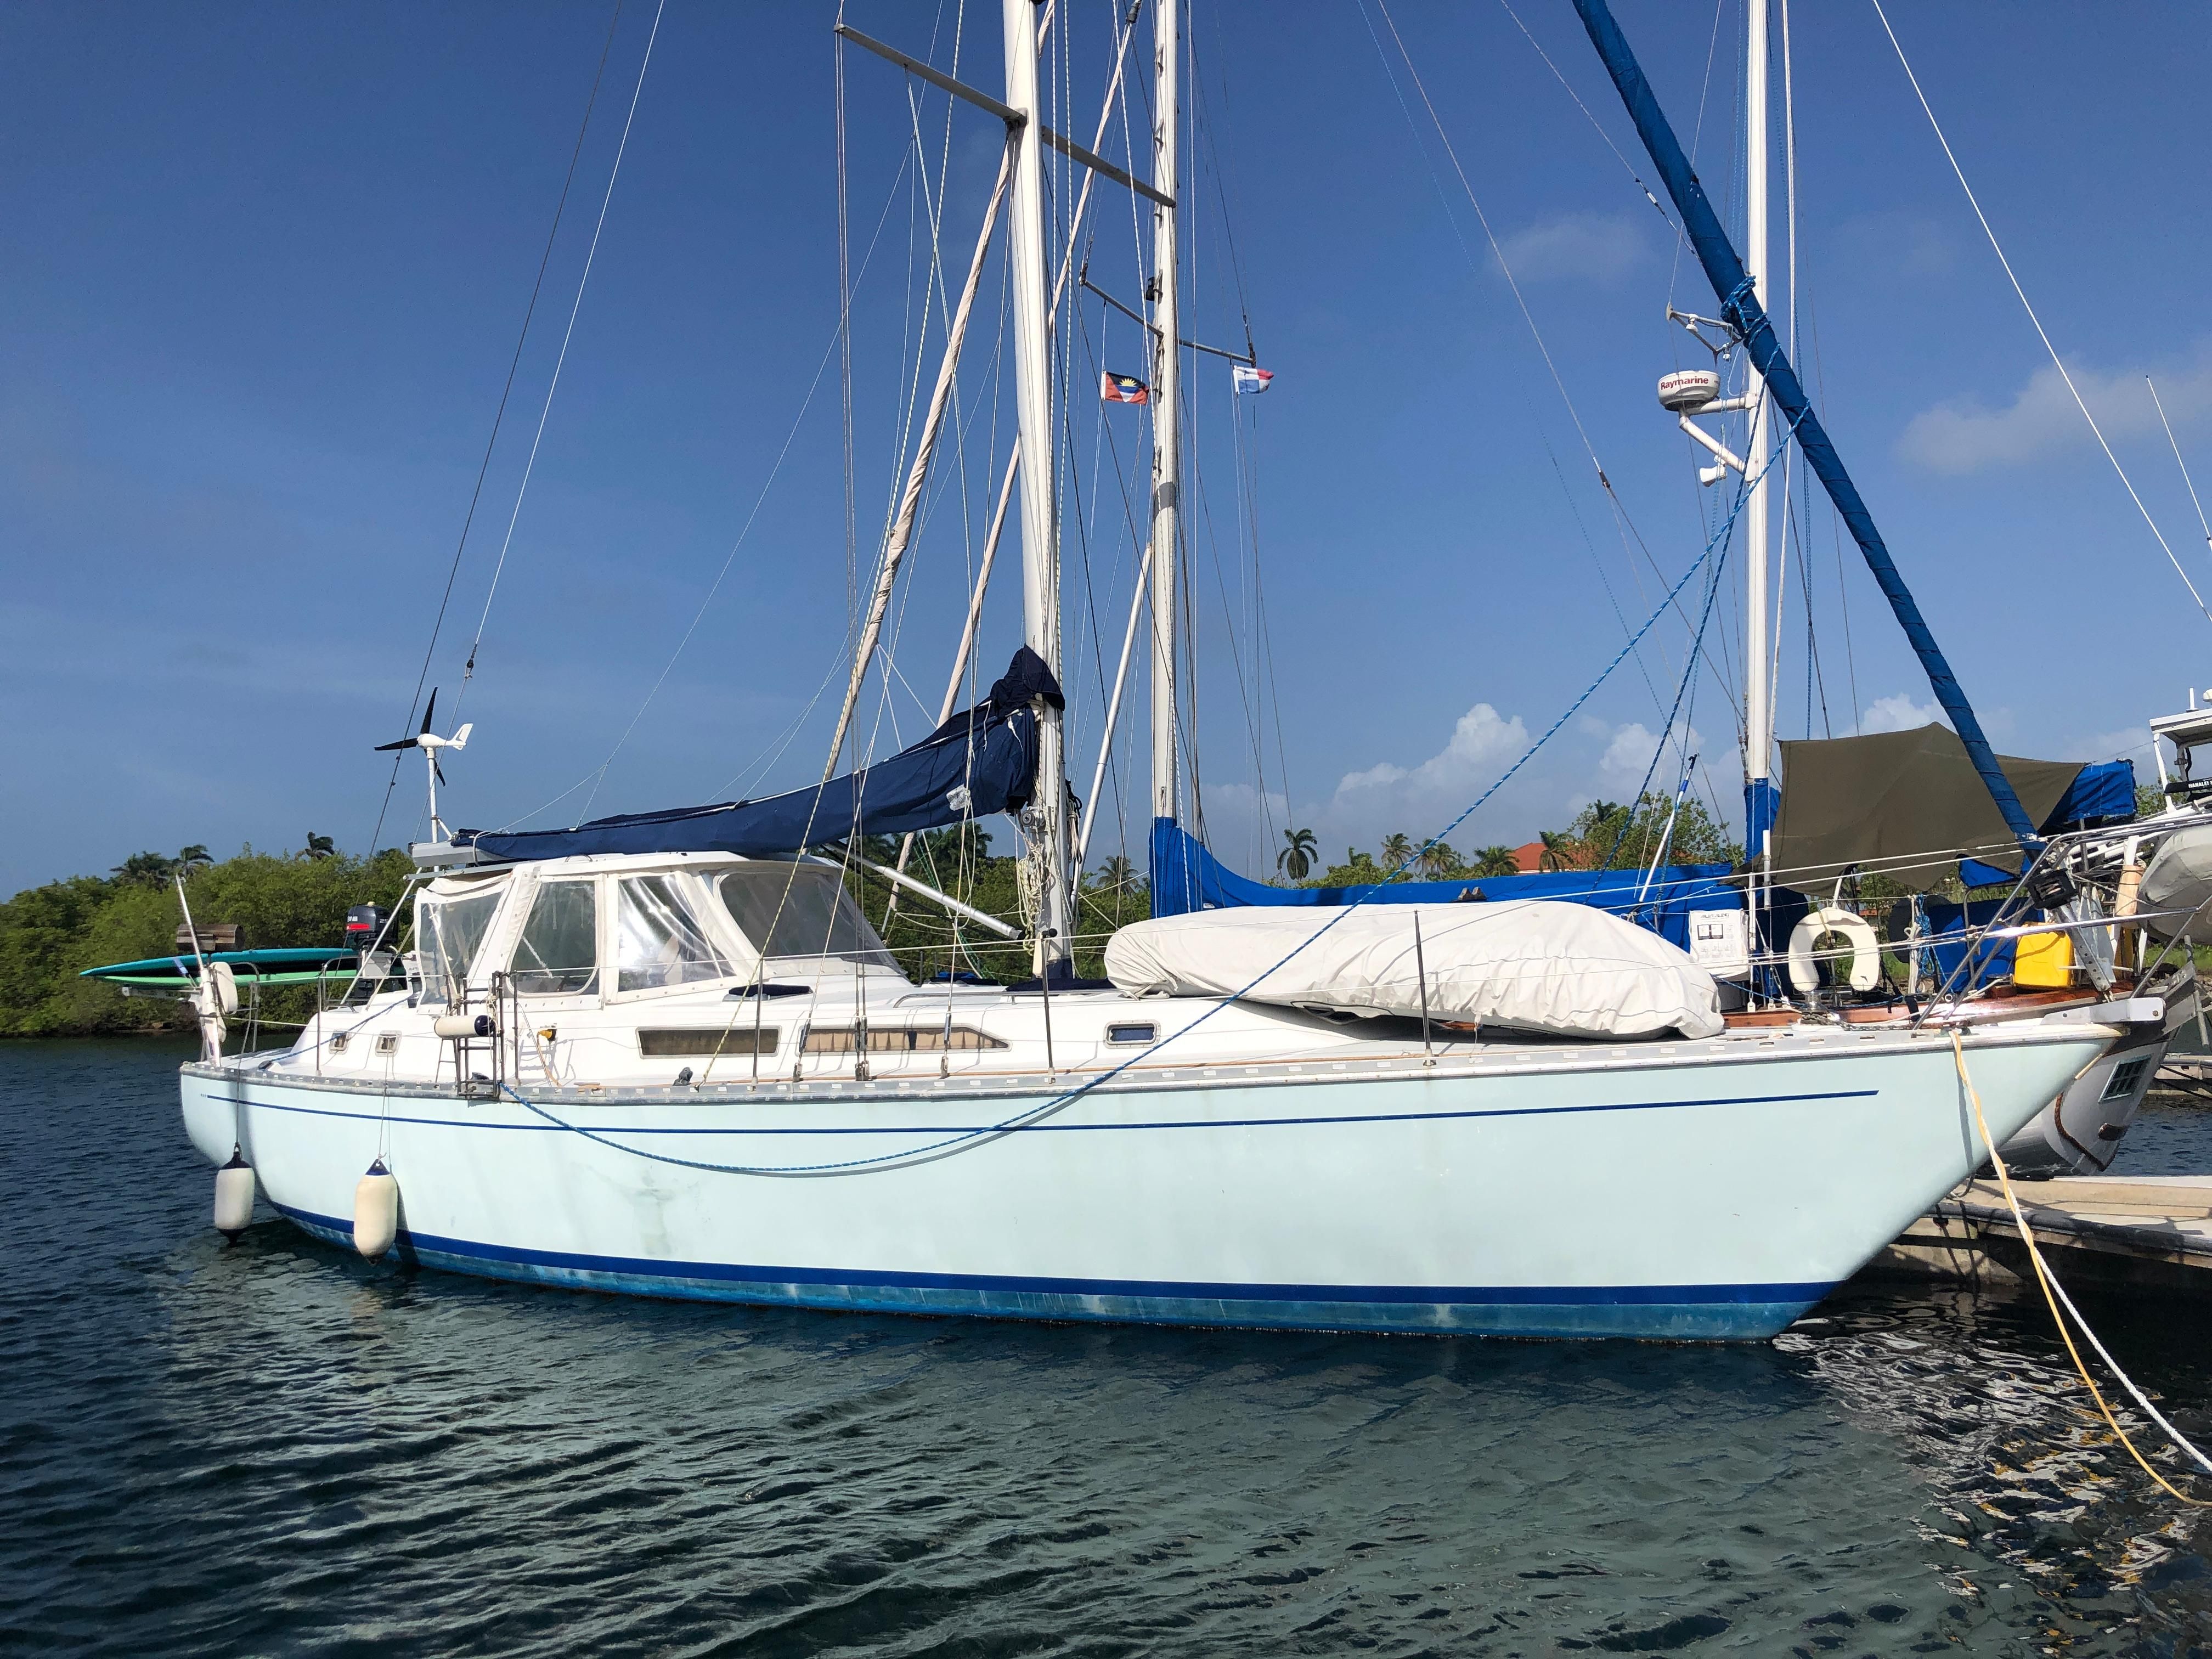 gulfstar sailboat reviews